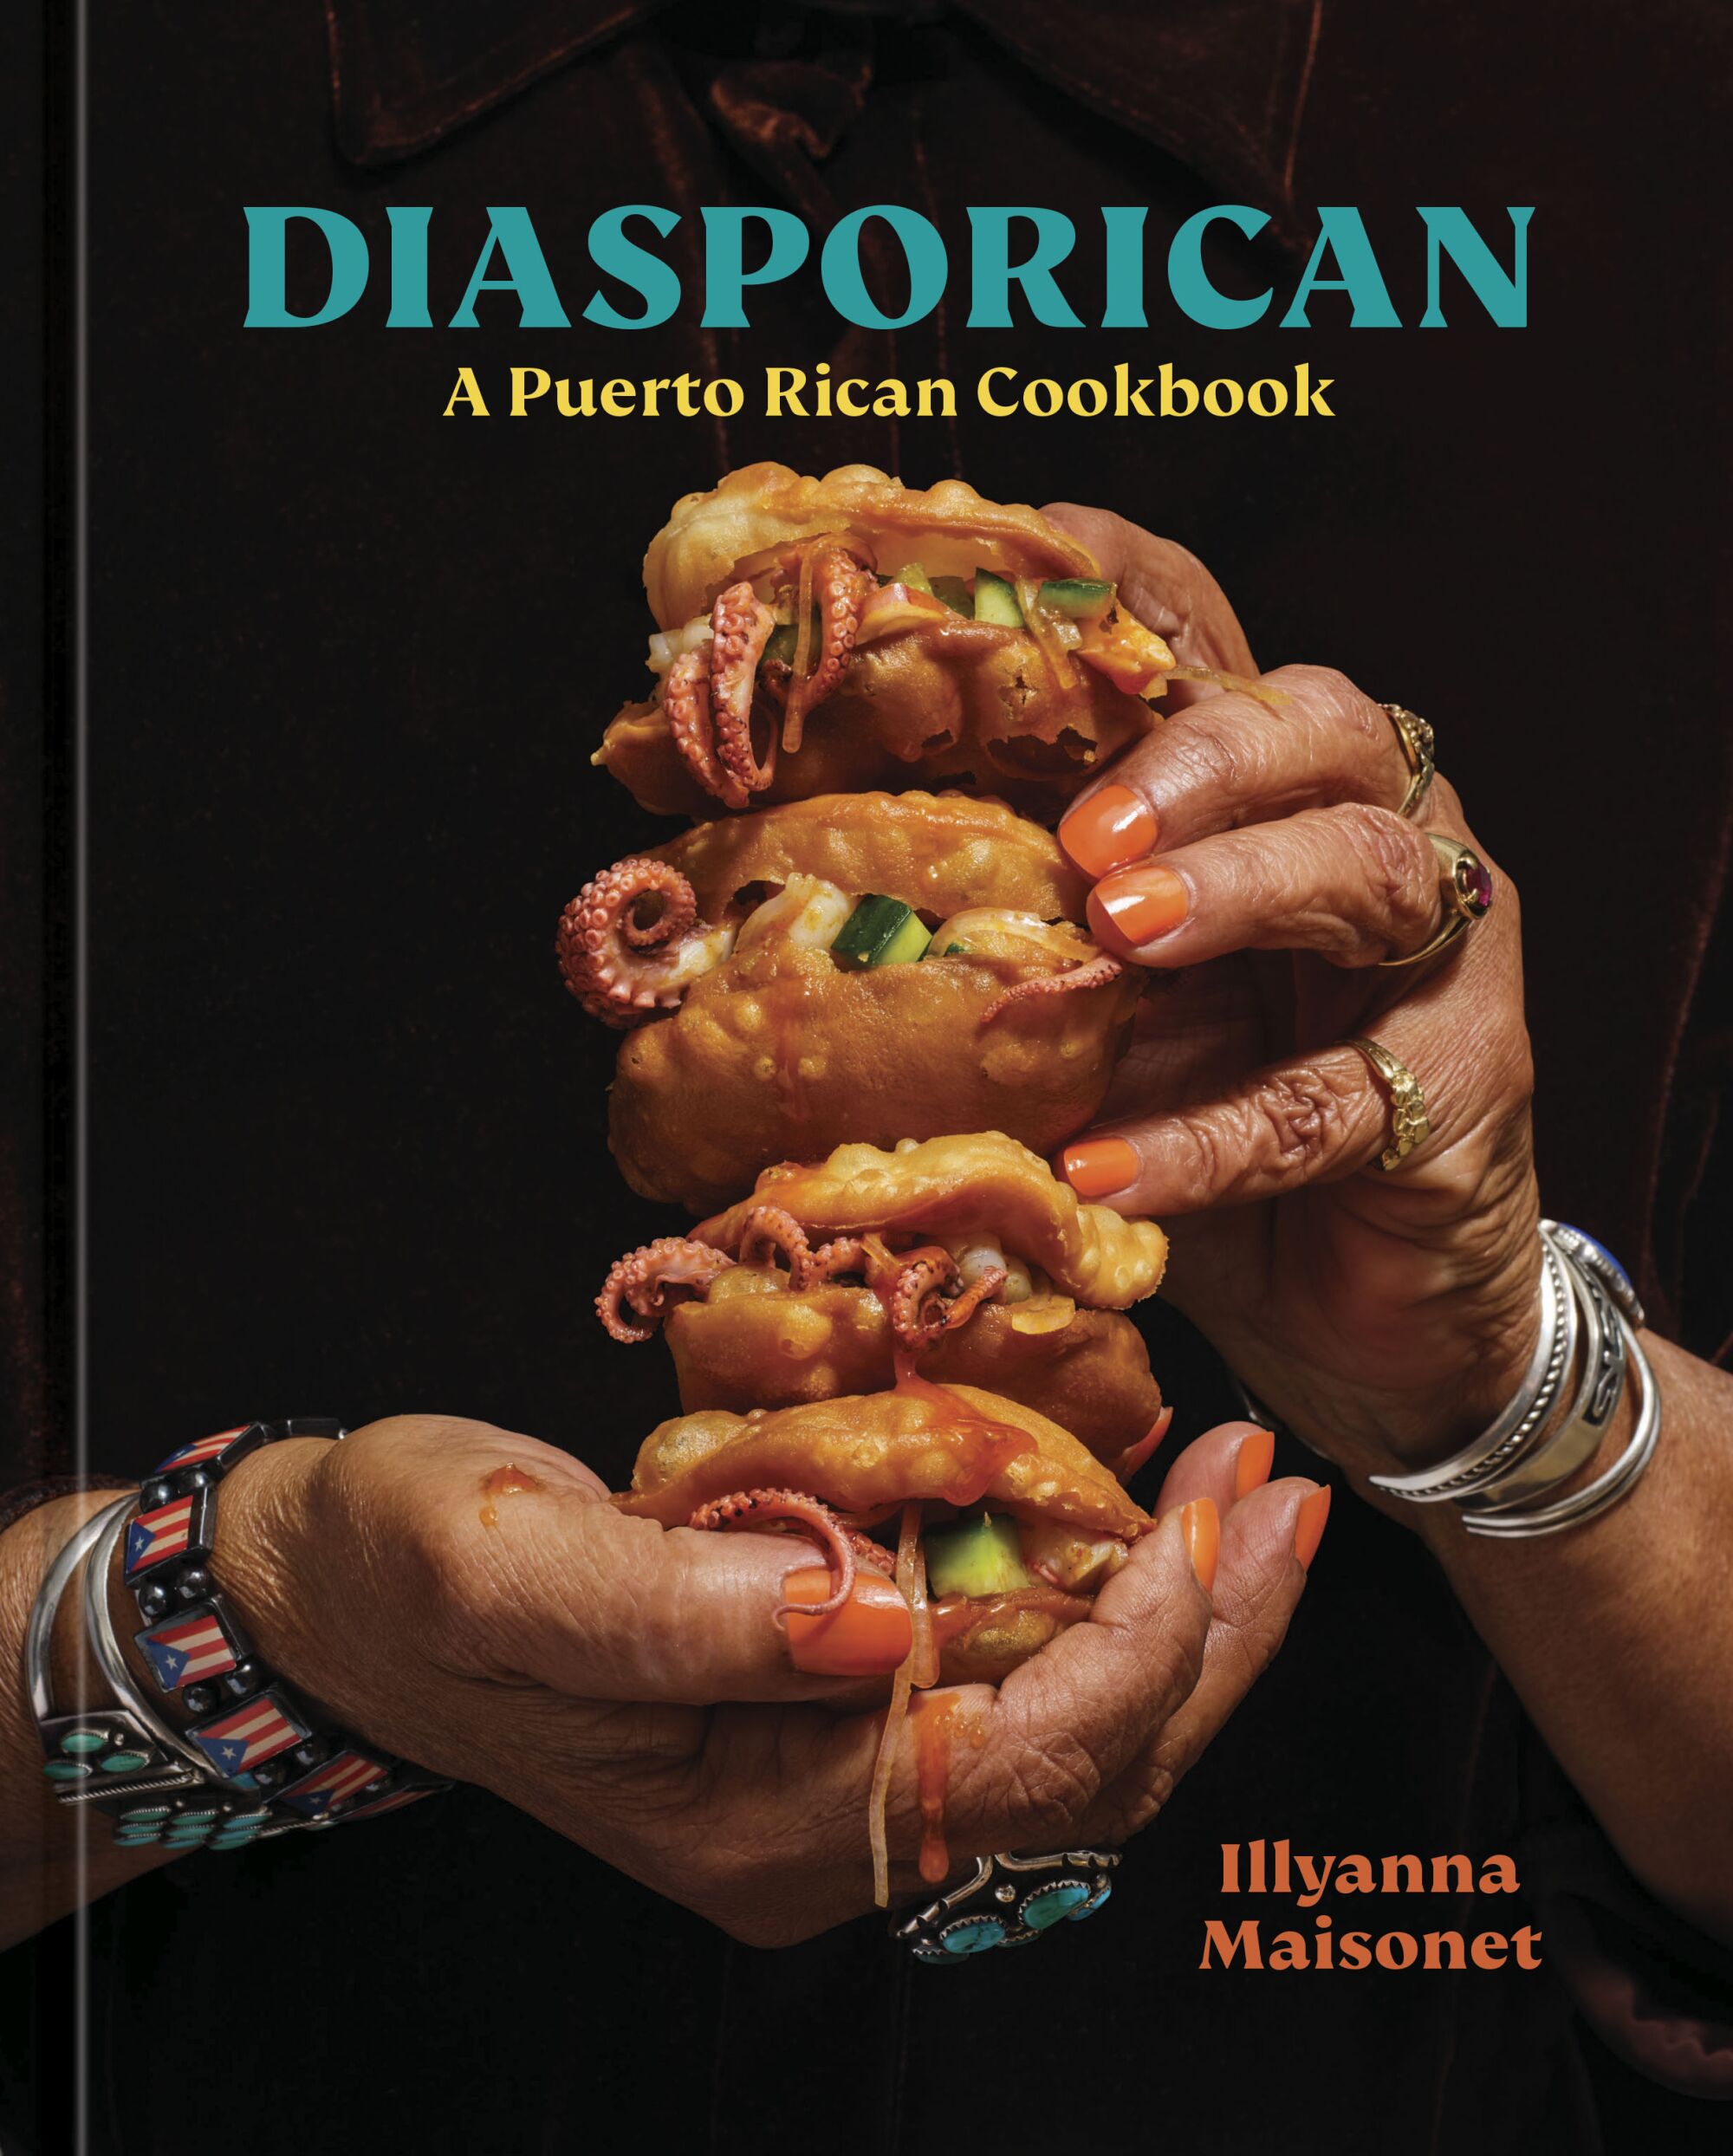 "Diasporican: A Puerto Rican Cookbook" by Illyanna Maisonet